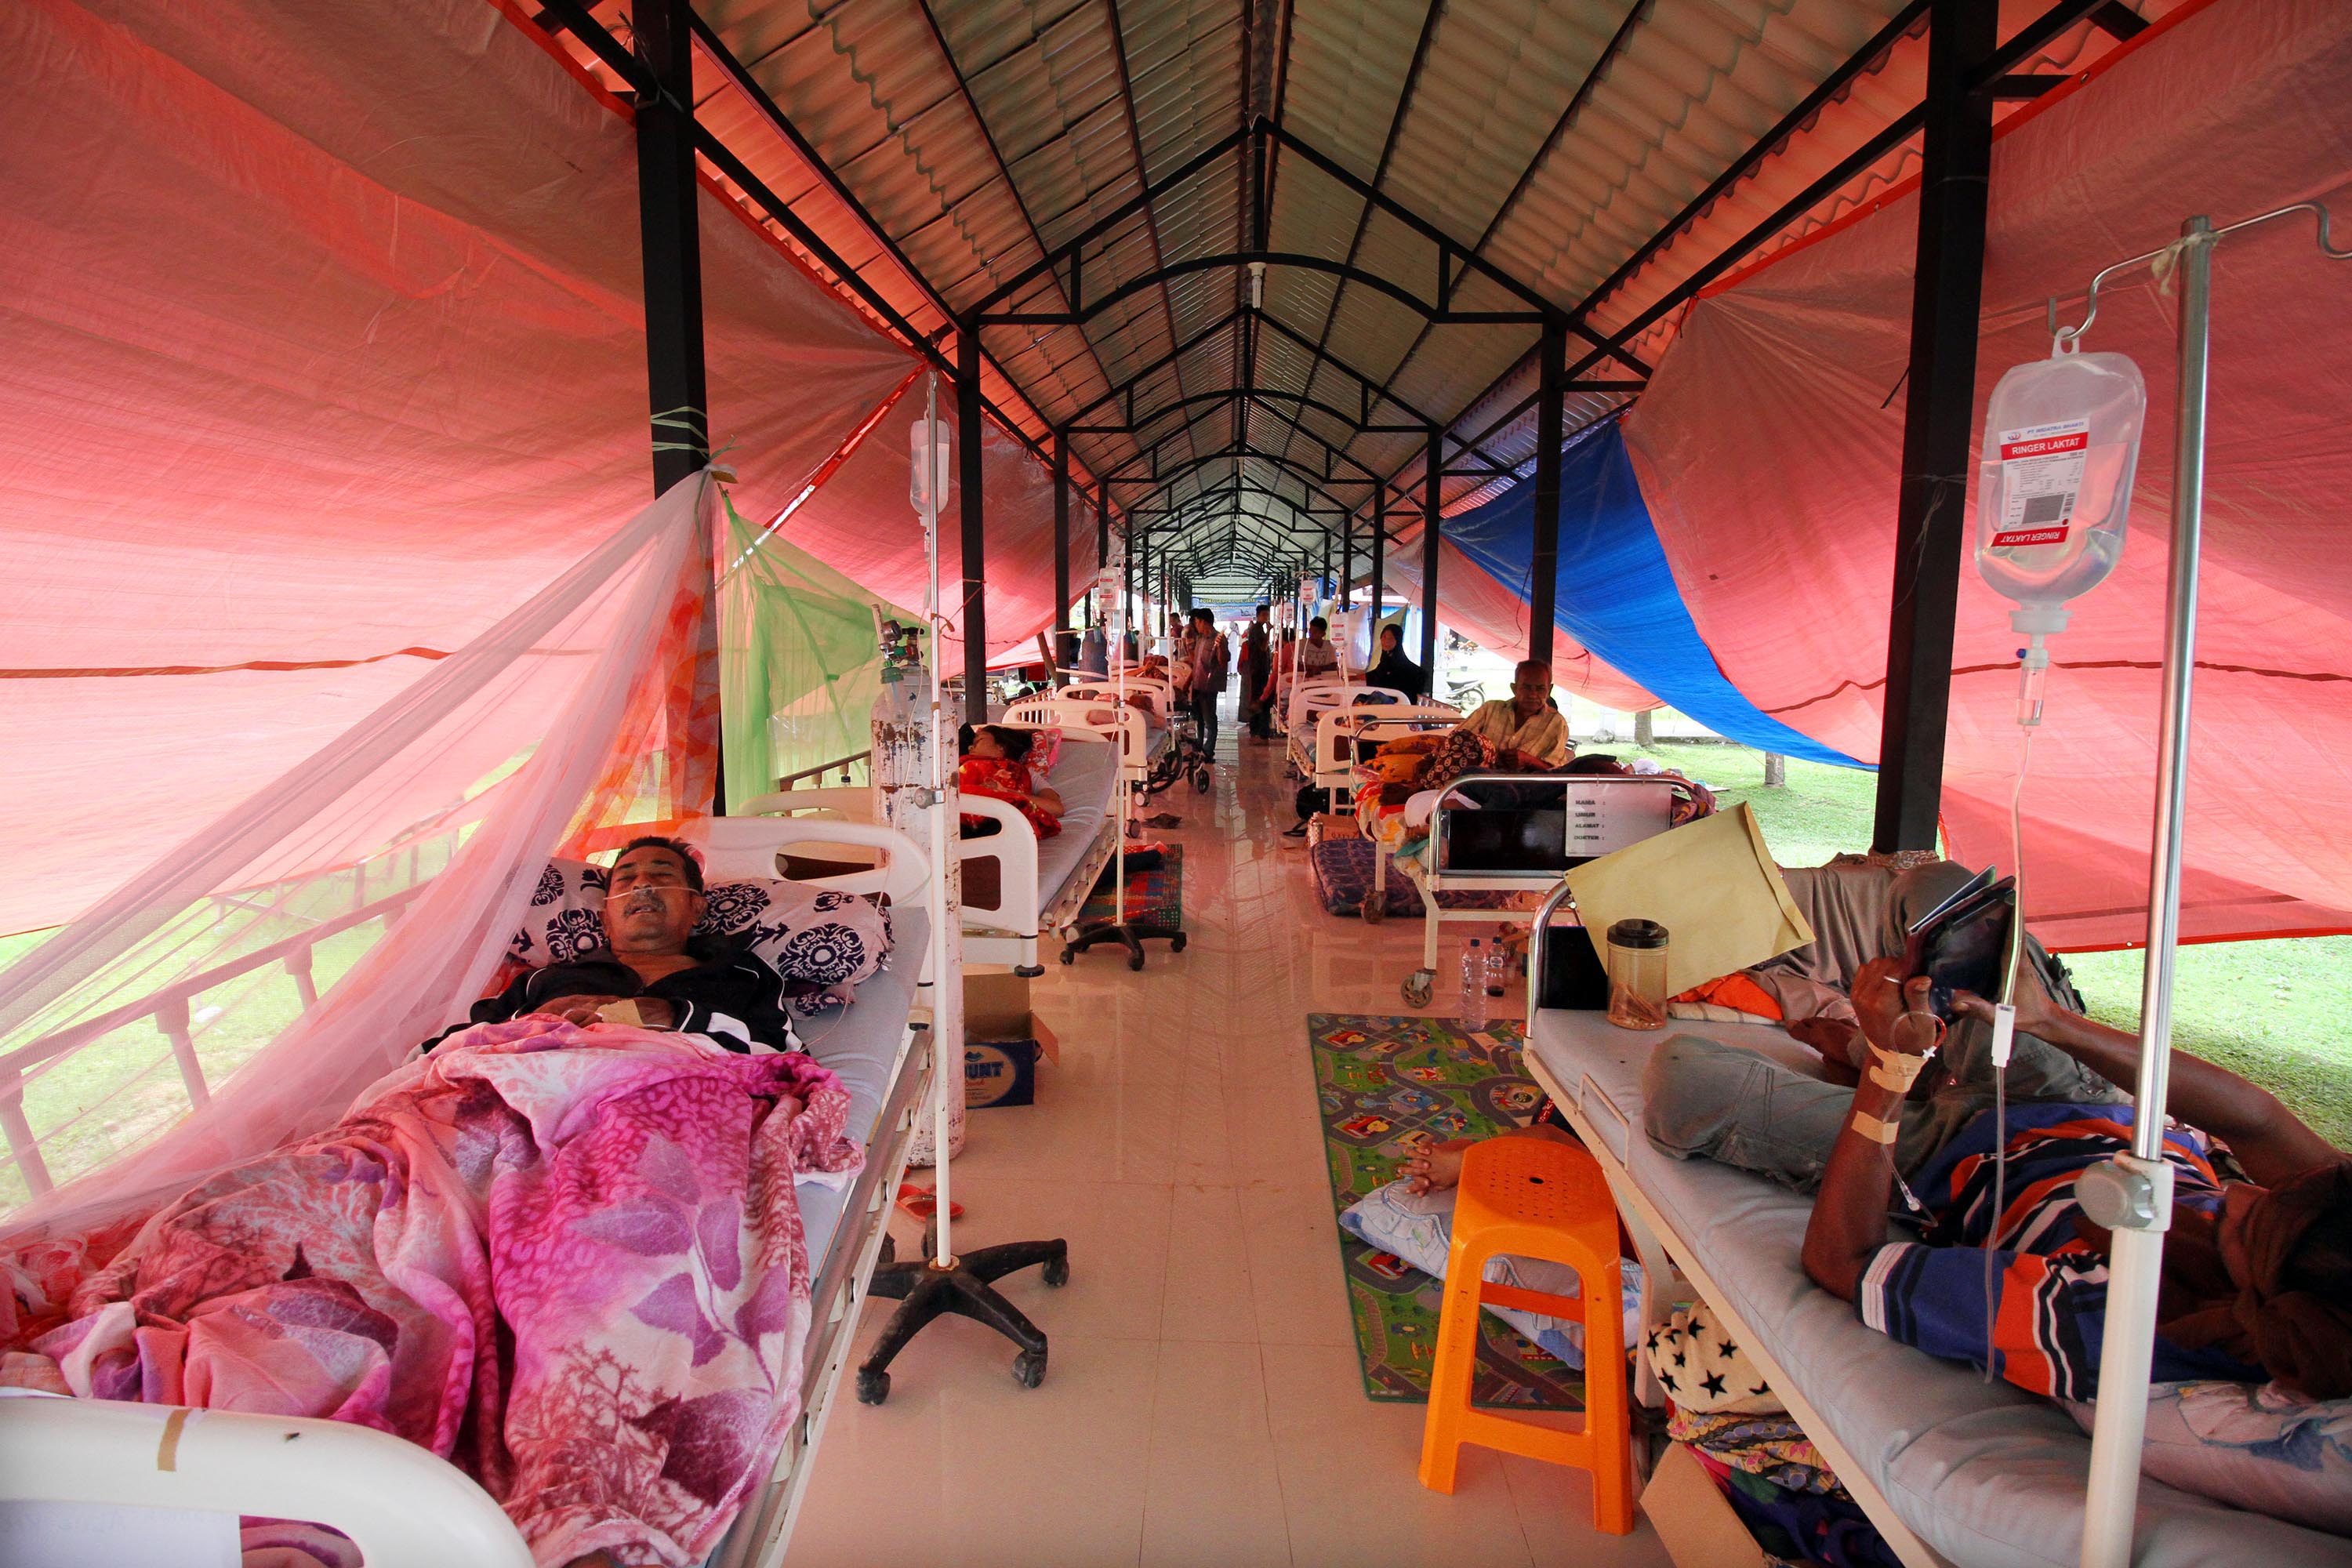 Pasien korban gempa menjalani perawatan medis di lorong Rumah Sakit Umum Daerah (RSUD) Pidie Jaya, Provinsi Aceh, pada 14 Desember 2016. Foto oleh Rahmad/Antara
 